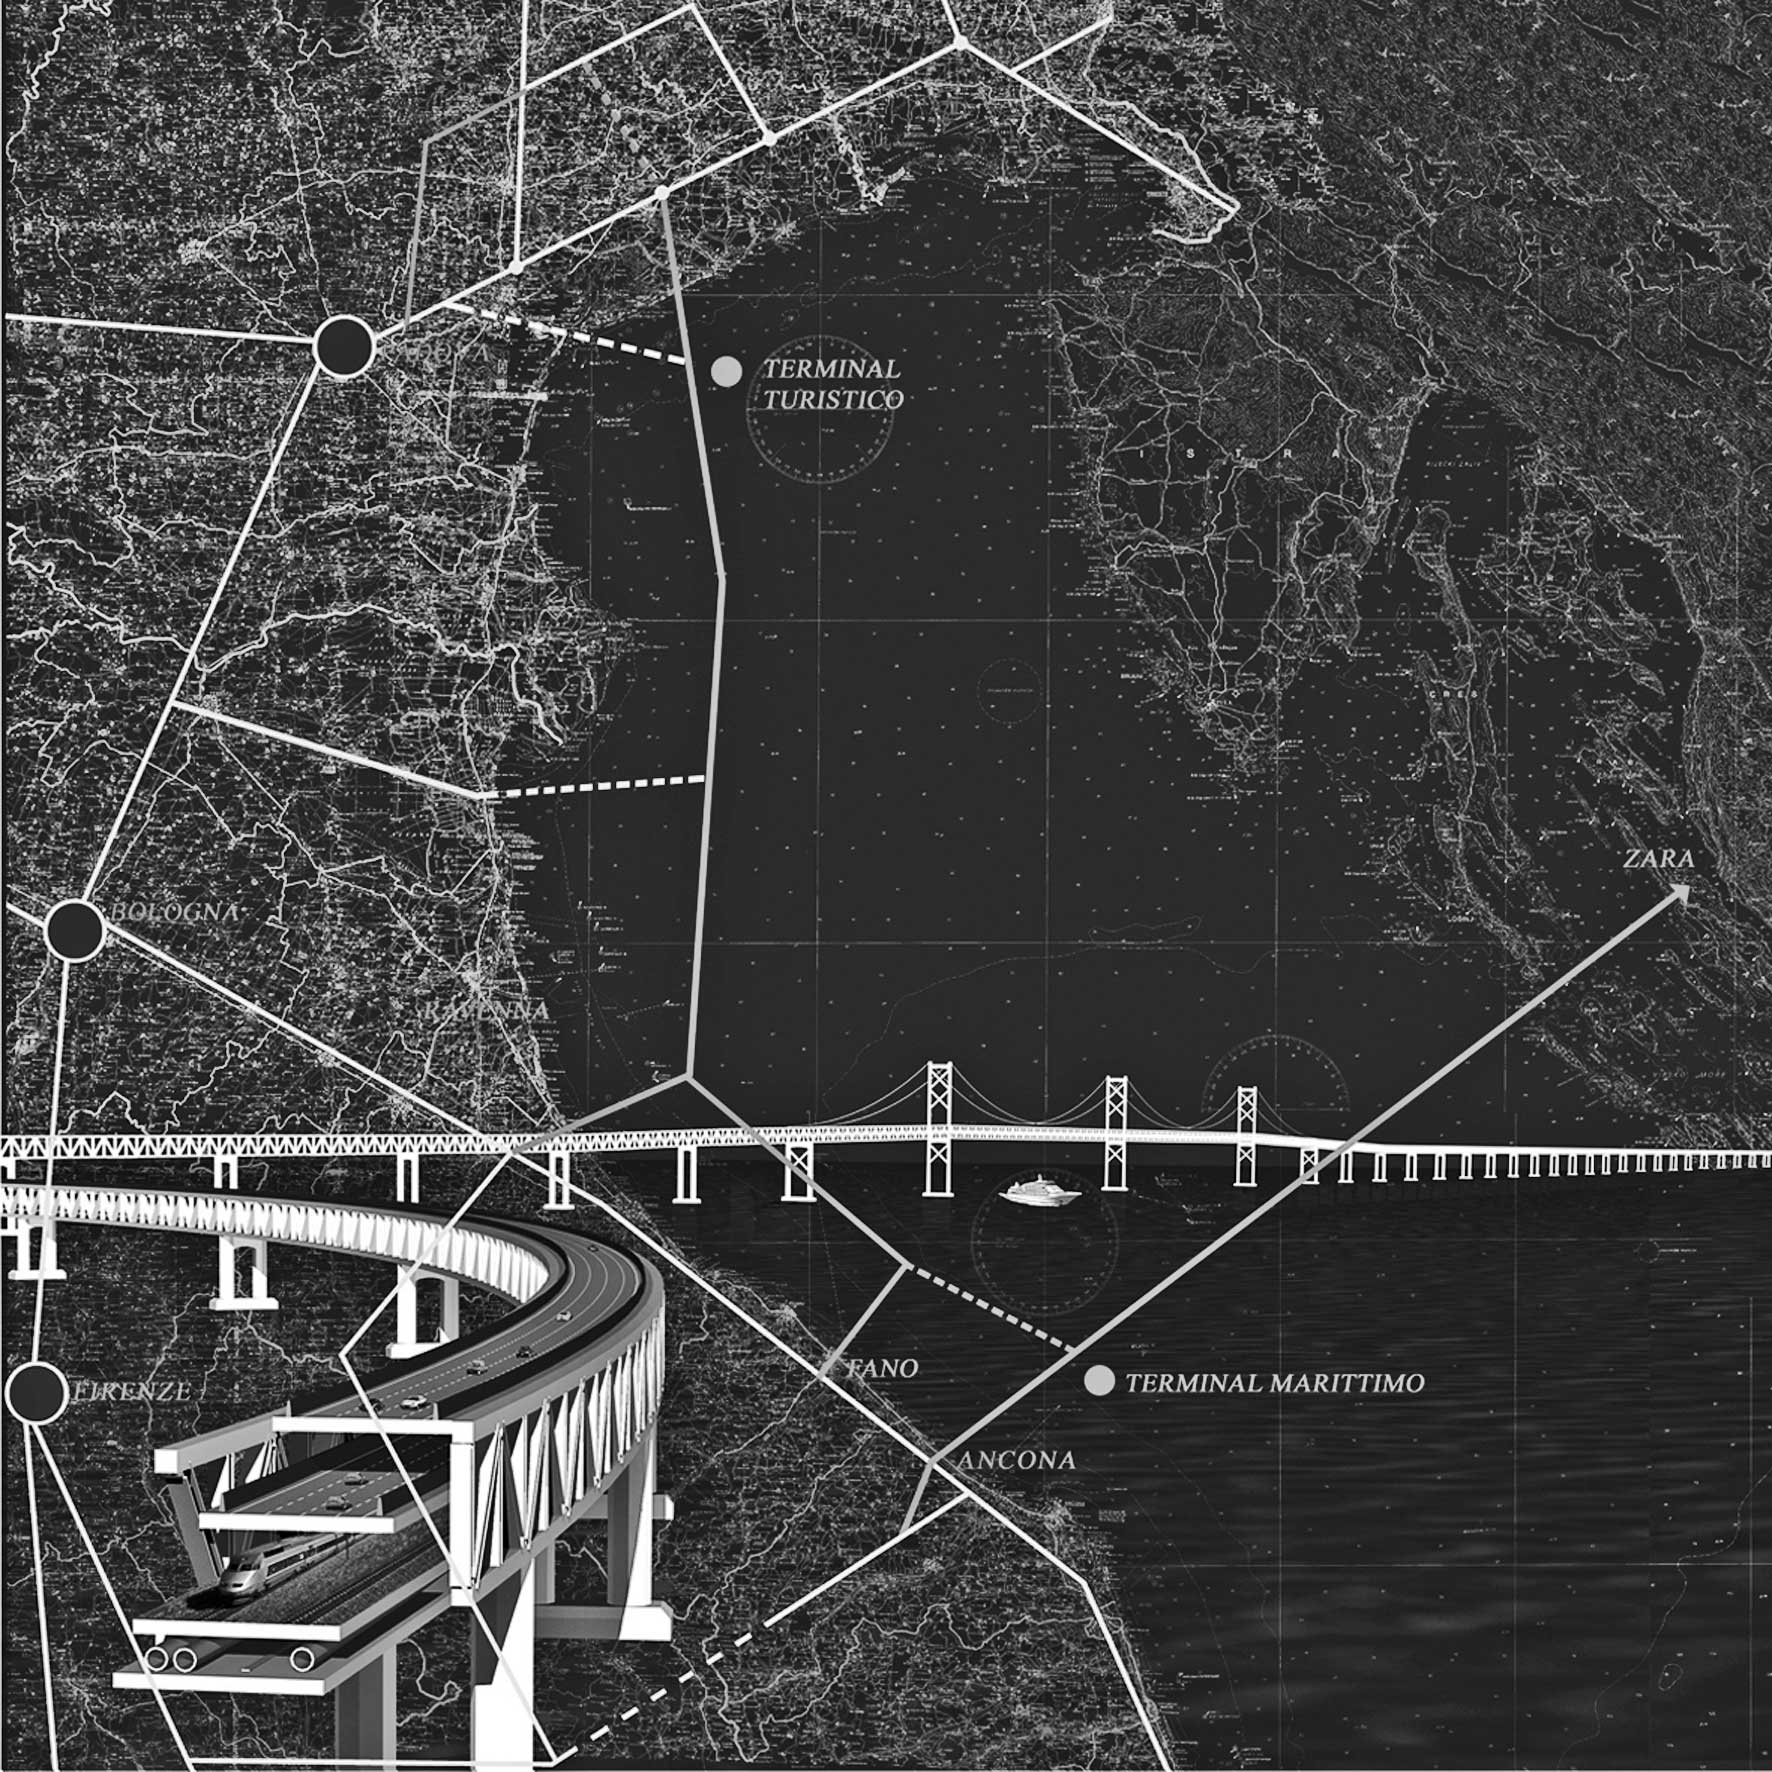 10 - Progetto “Ponte sull’Adriatico e terminal marittimo”, Ancona (Italia) - Zara (Dalmazia) - Prima idea progettuale presentata al Ministero delle Infrastrutture